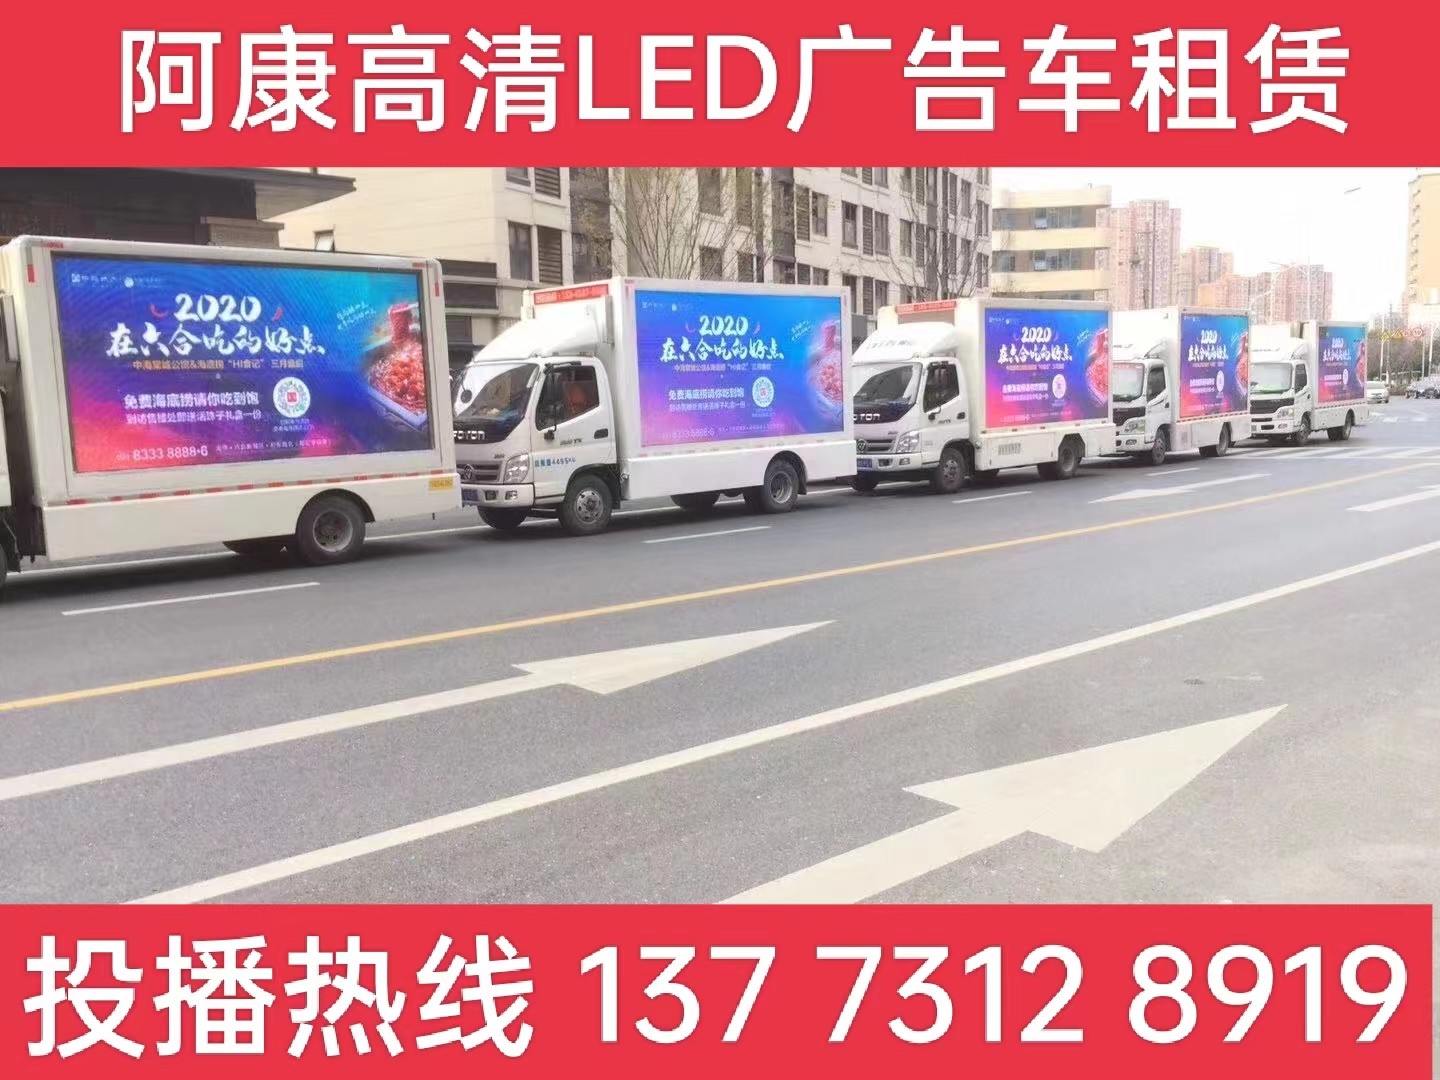 广陵区宣传车出租-海底捞LED广告